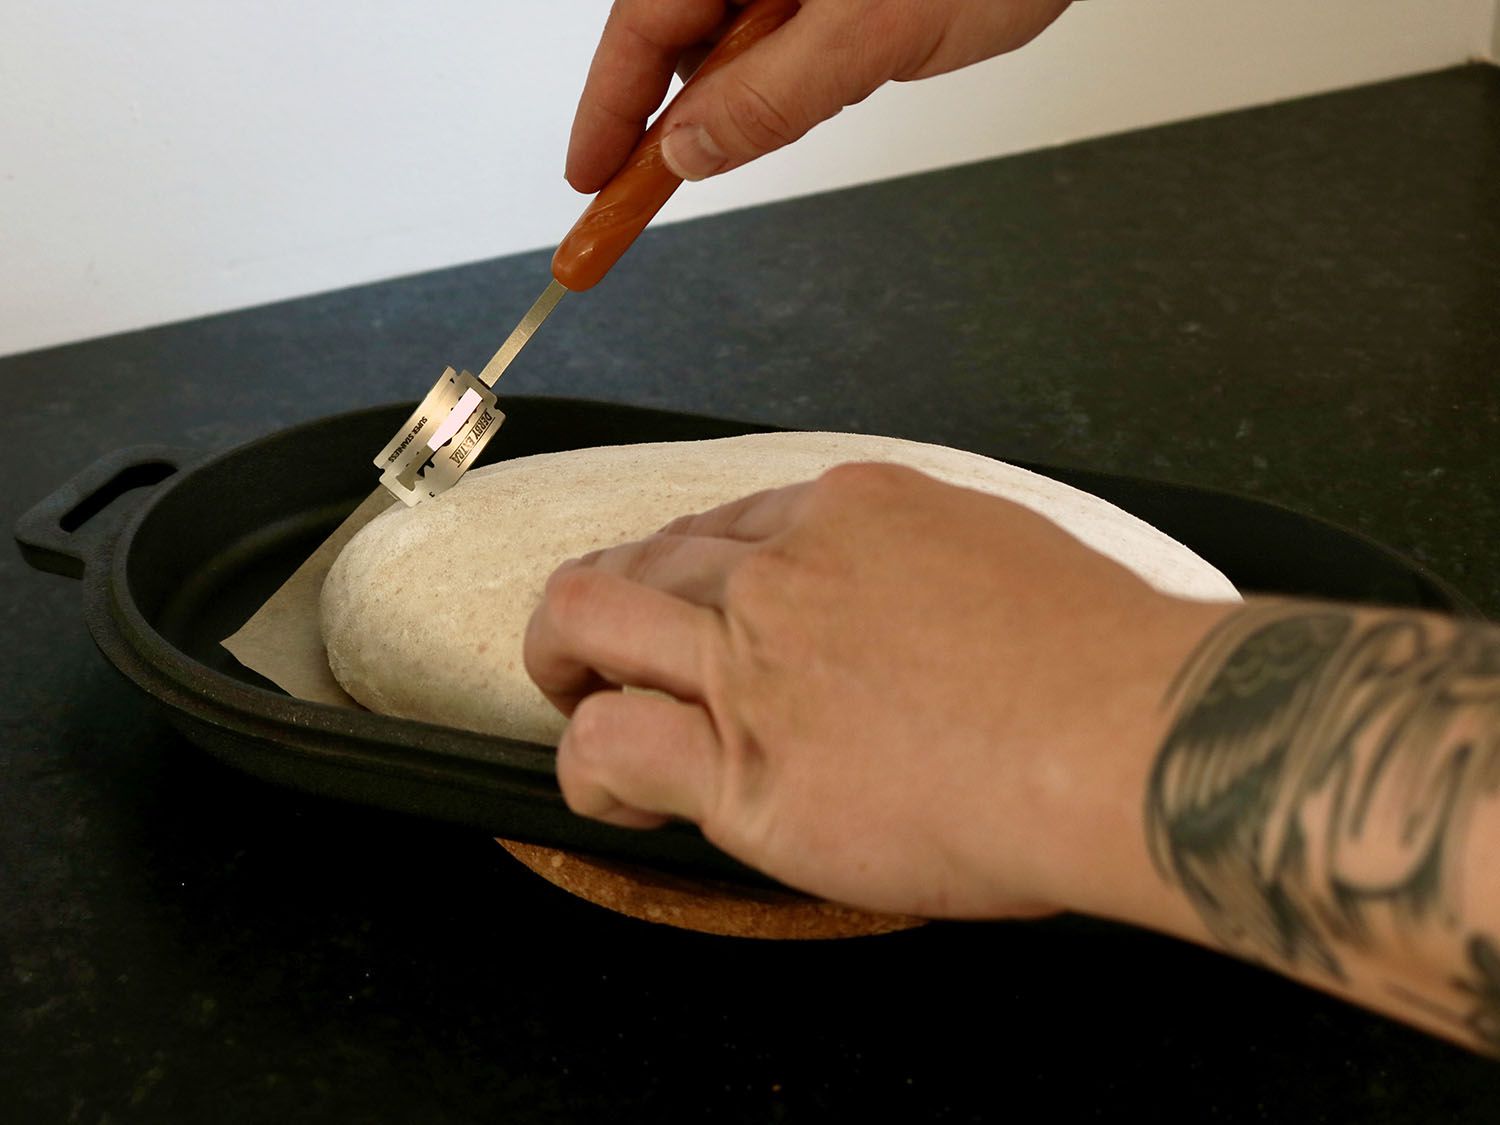 一个面包面团正被绑在面包腿上的剃须刀片划破。